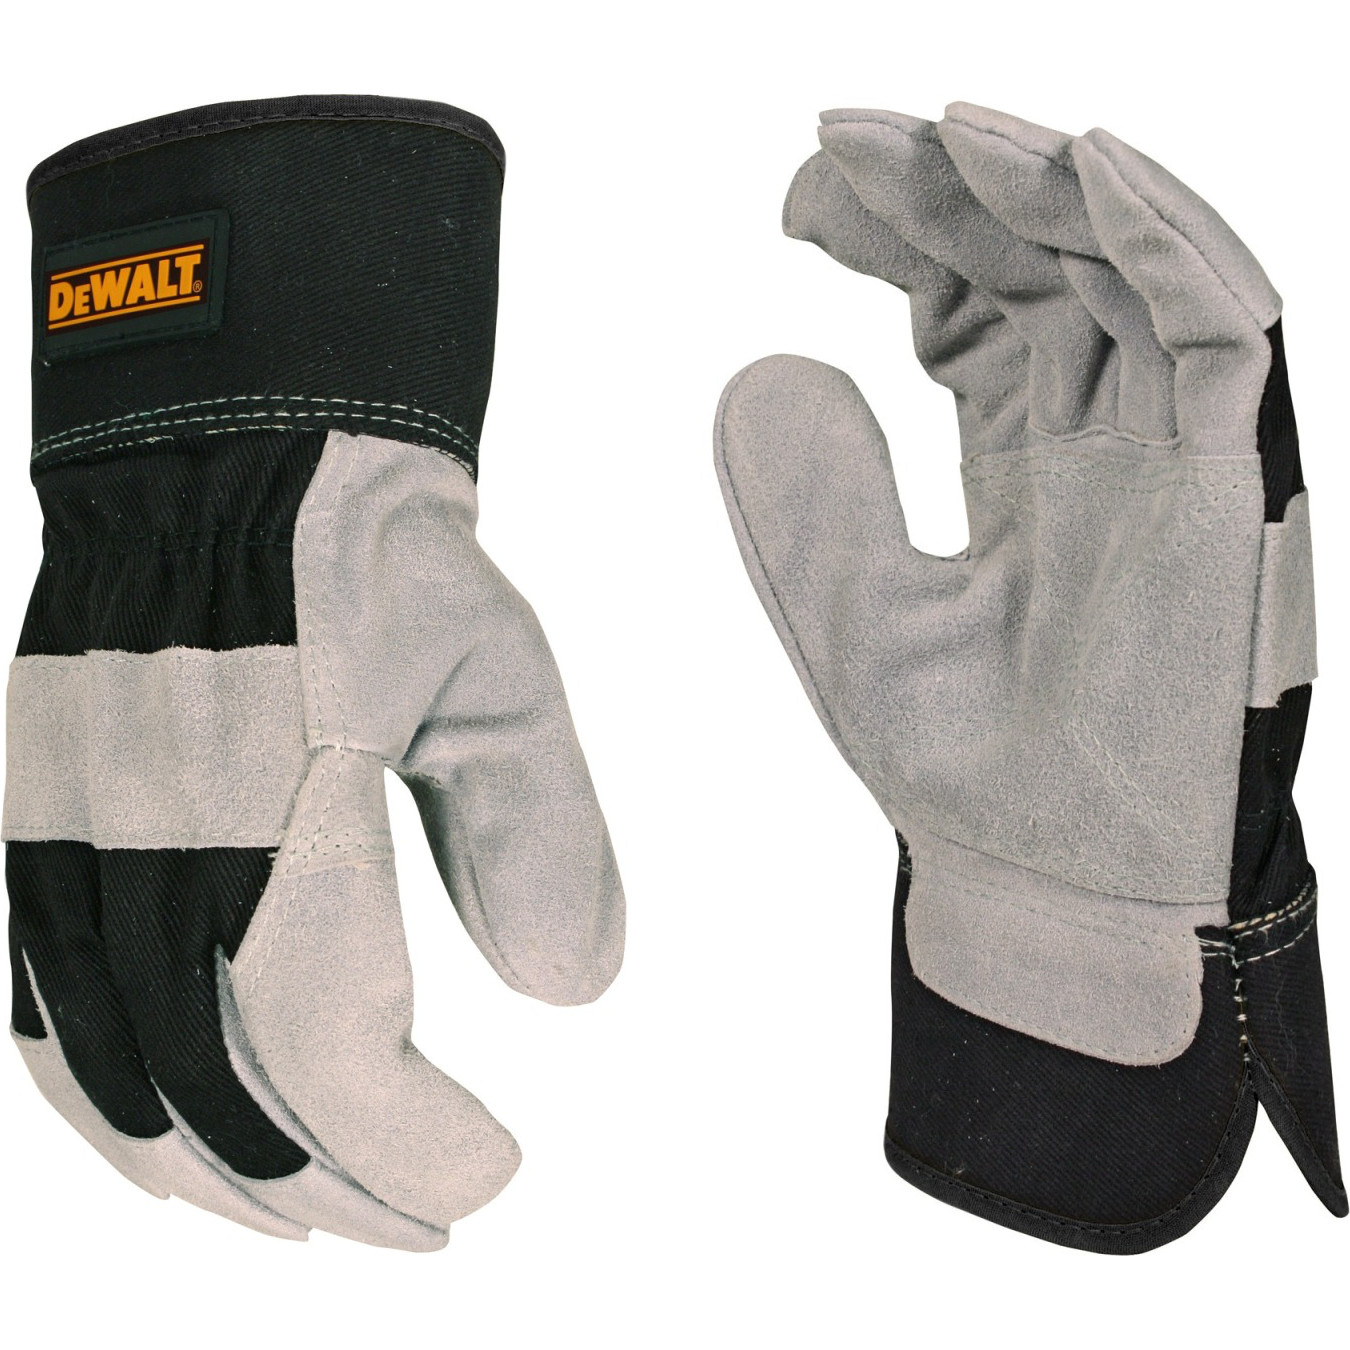 Dewalt Premium Cowhide Leather Work Glove